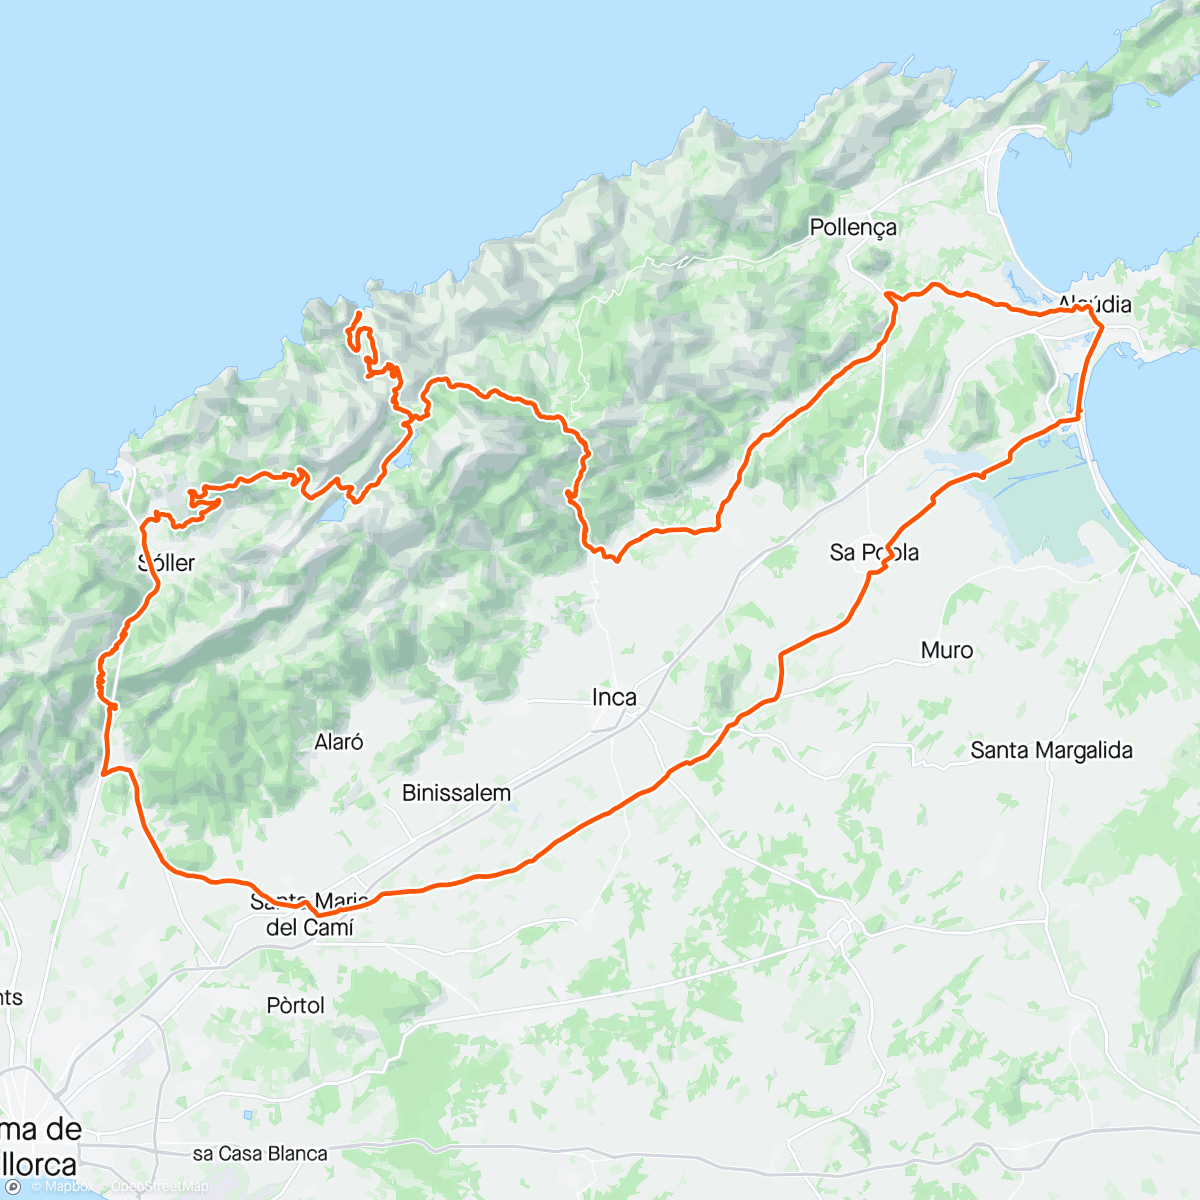 Mapa da atividade, Colls de Sa Batalla, Reis, Sa Calobra, Puig Major, Soller